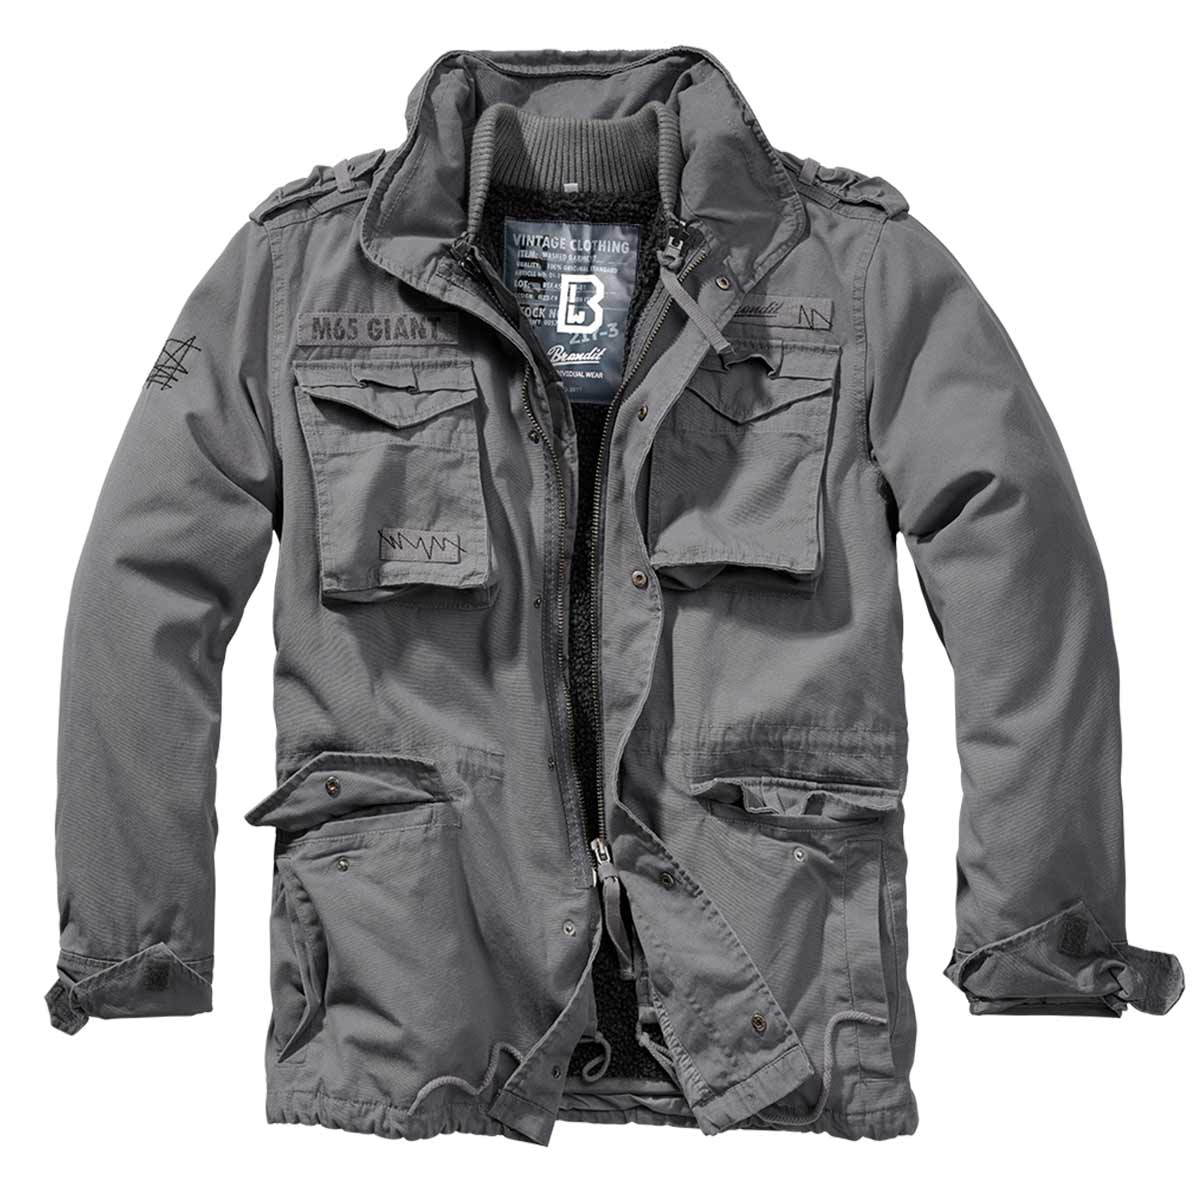 Куртка Brandit M65 Giant - Charcoal Grey